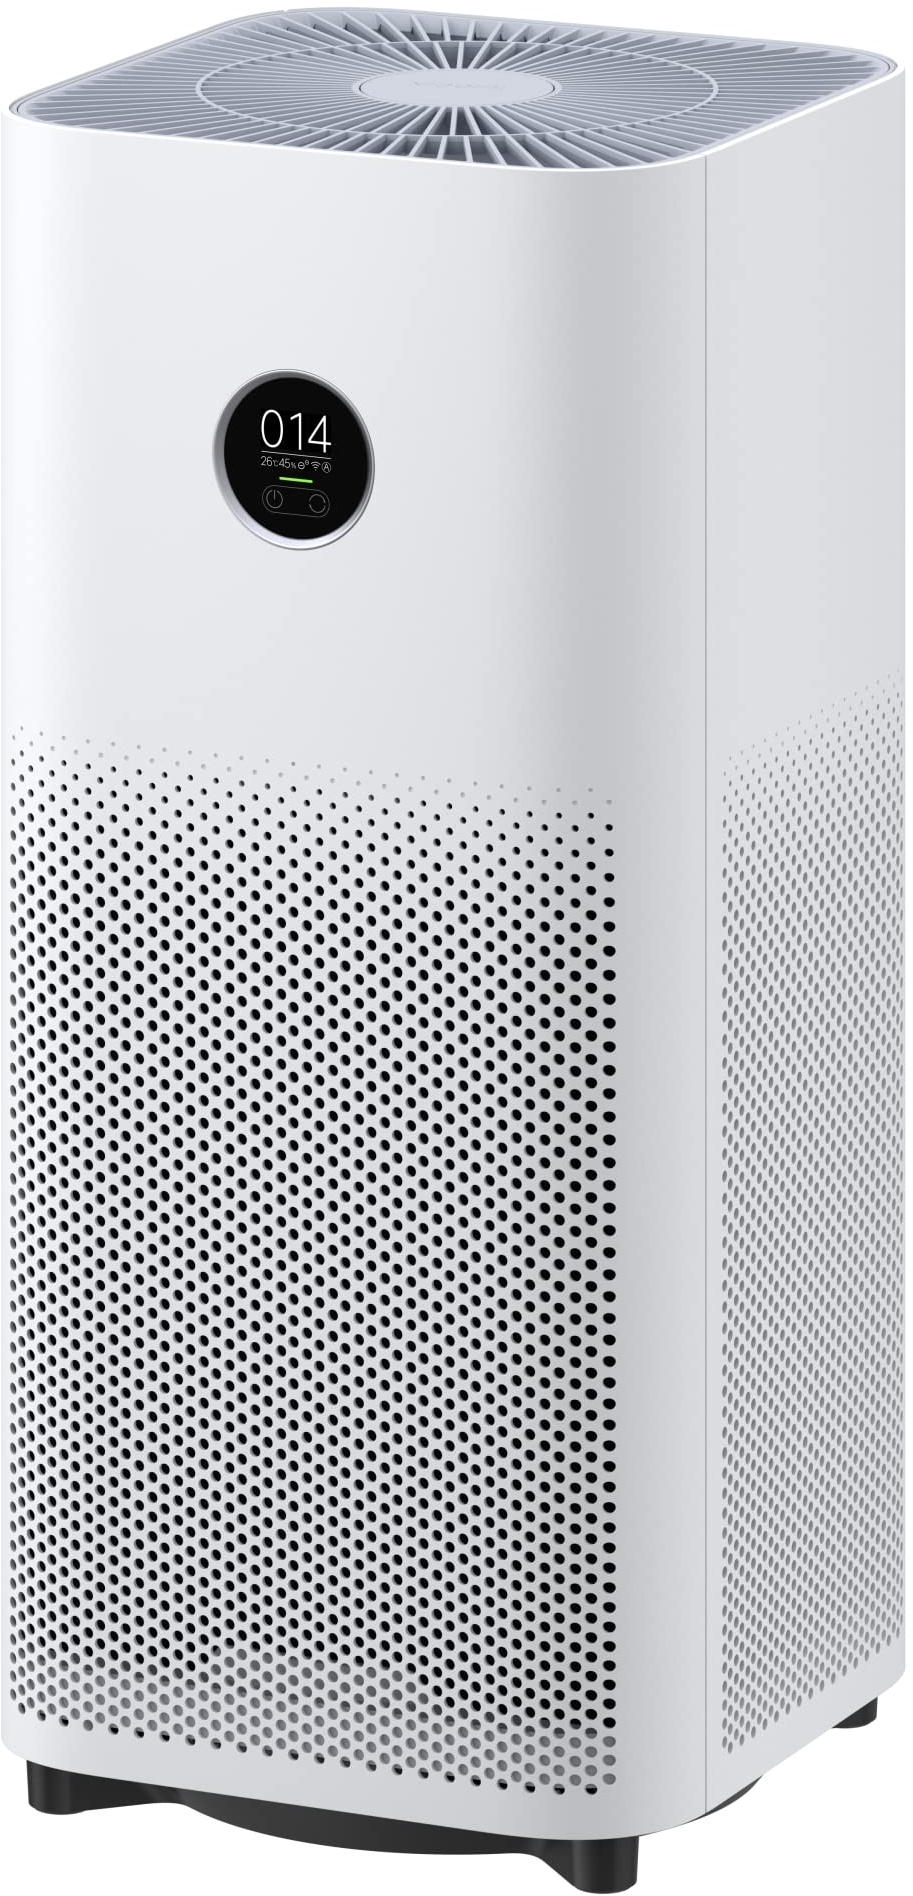 Xiaomi Smart Air Purifier 4 DE Luftreiniger (beseitigt bis zu 99,97% Tierhaare, Pollen, Staub, Viren & Aerosole: PCADR 400m3/h, FCADR 150m3/h, optimal für 48m2, Touch Display, App- & Sprachsteuerung)